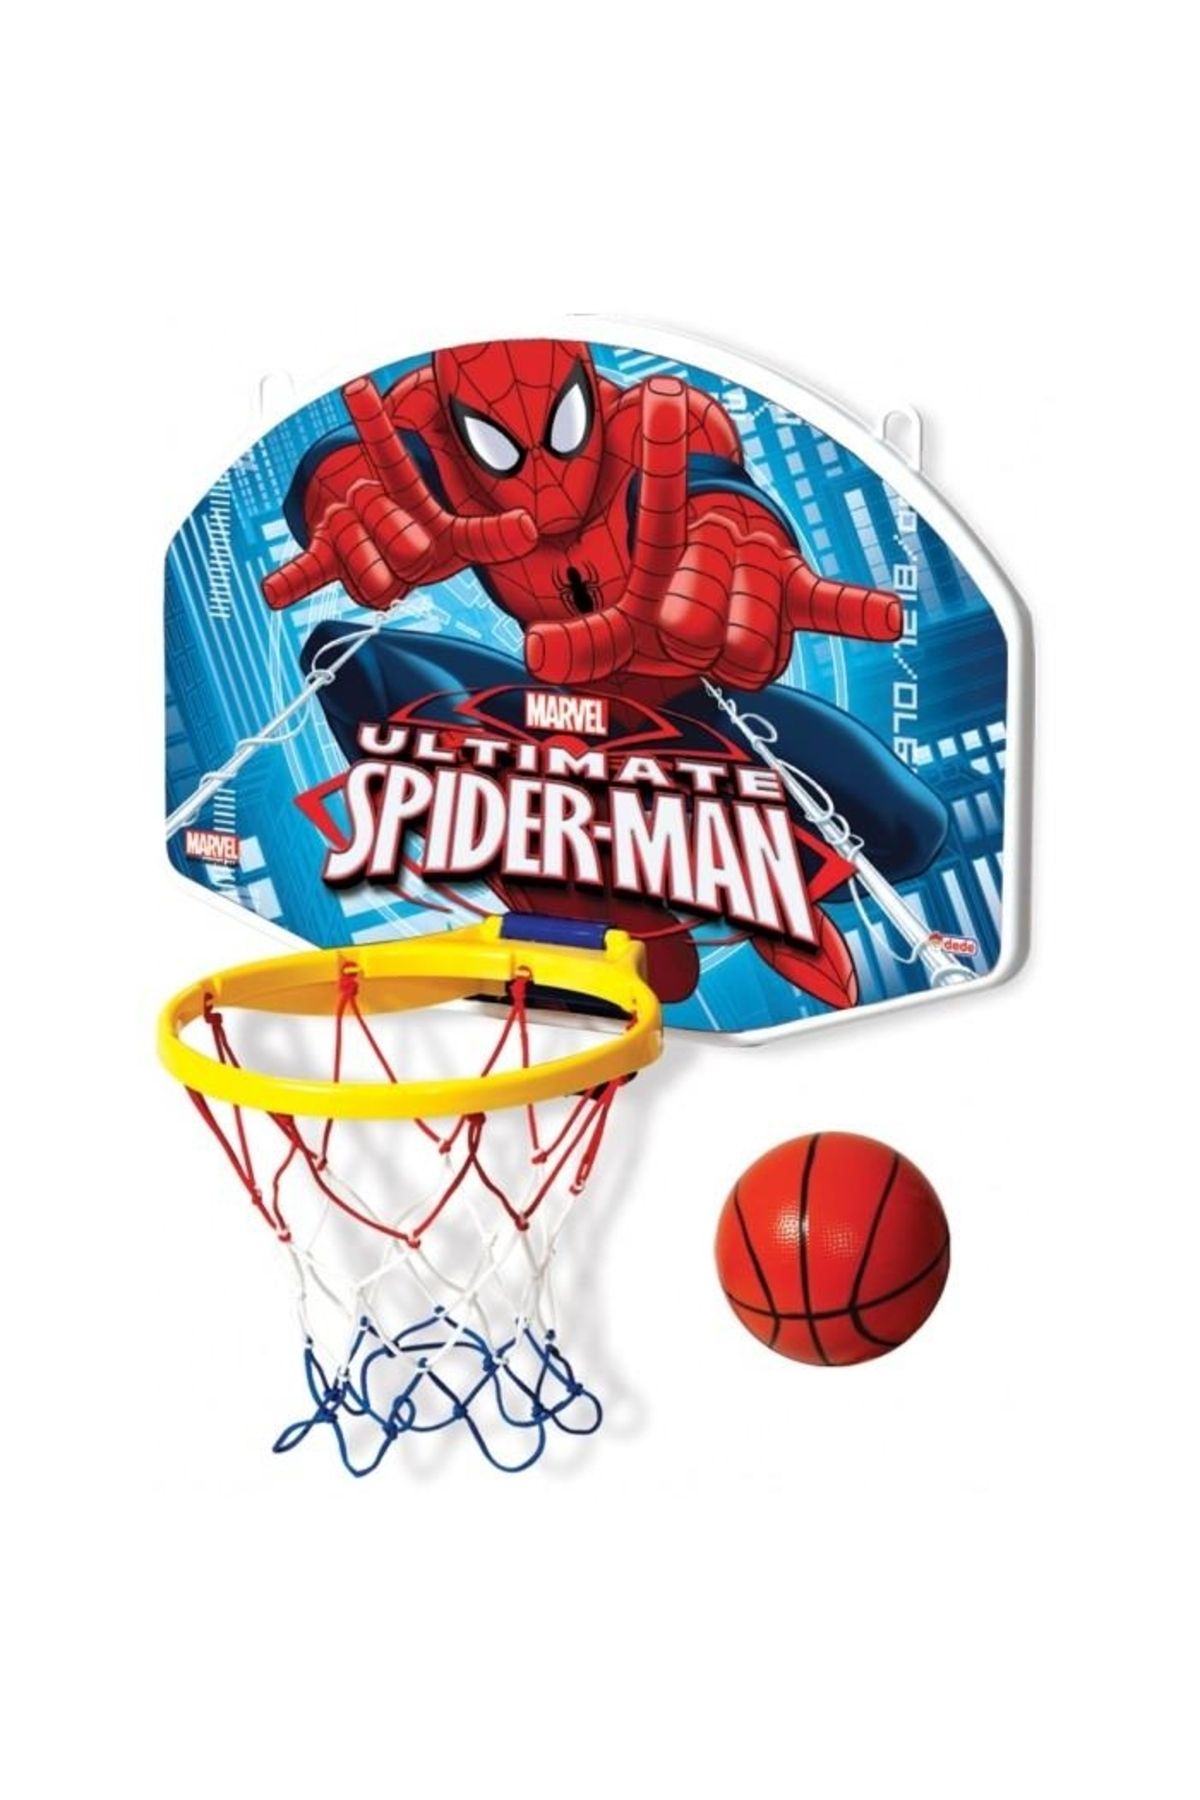 DEDE Oyuncak Spider Man Orta Boy Basket Potası